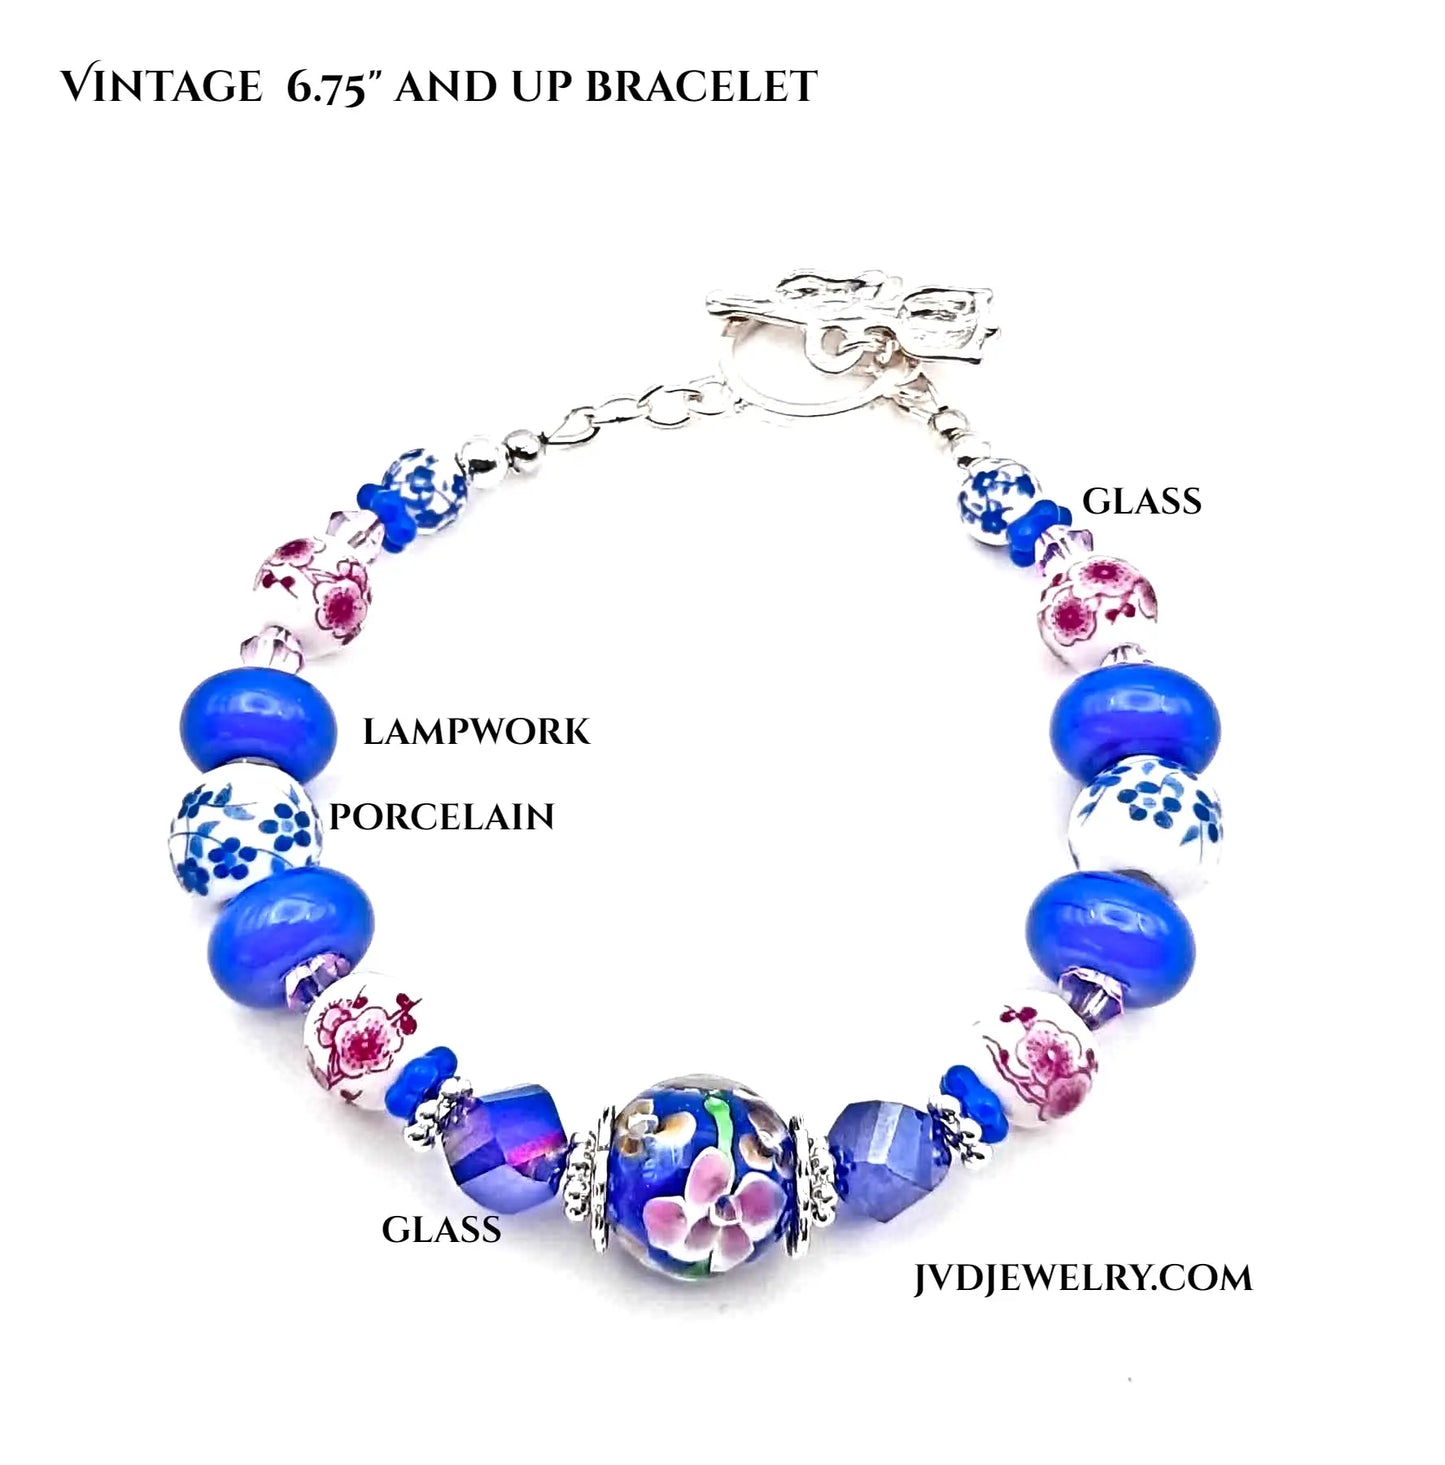 Vintage bracelet with porcelain beads - Image #2